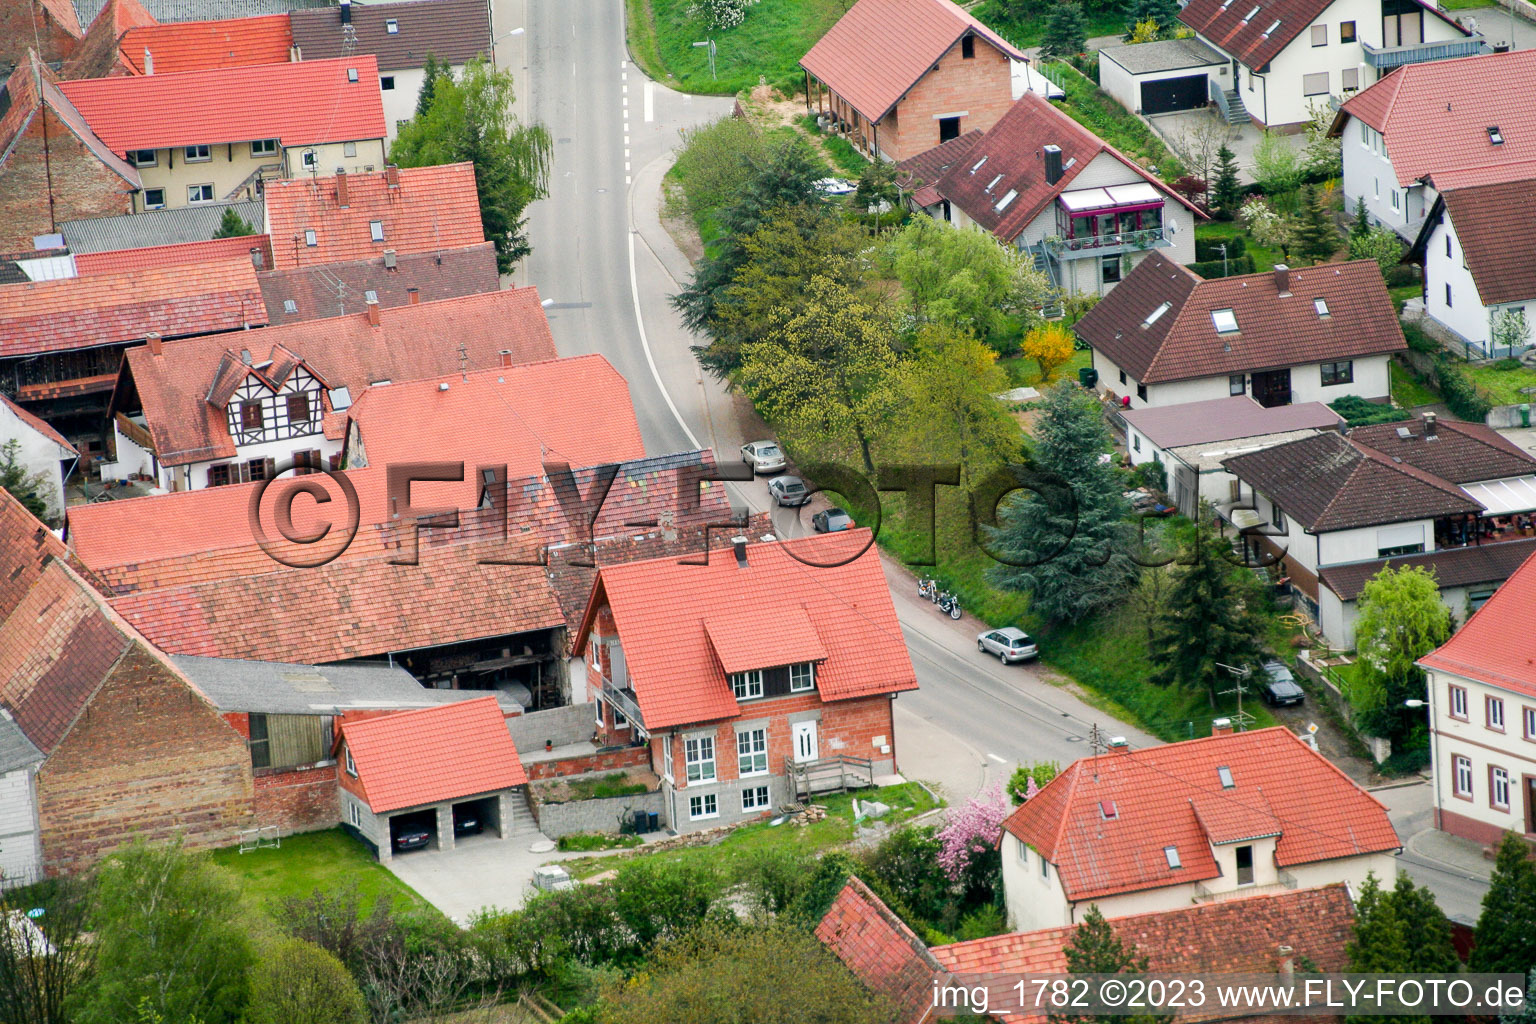 Hergersweiler im Bundesland Rheinland-Pfalz, Deutschland aus der Drohnenperspektive